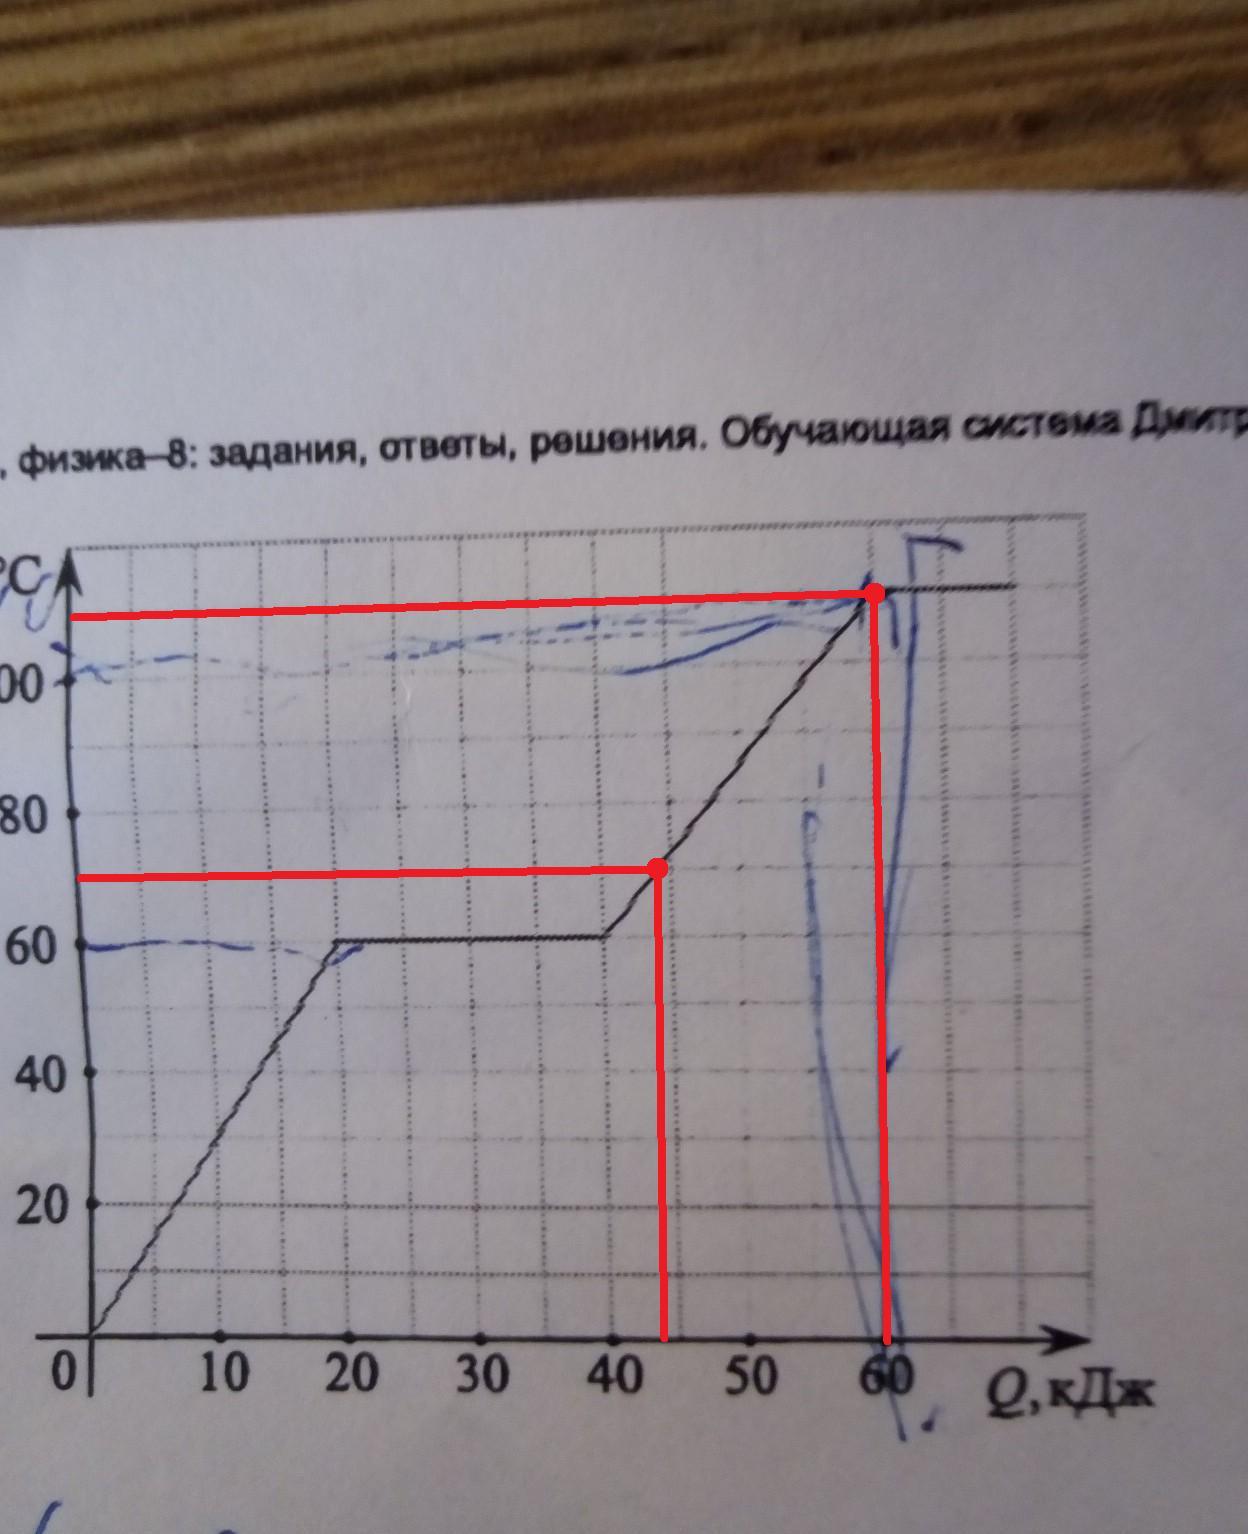 На графике показана зависимость температуры некоторого вещества